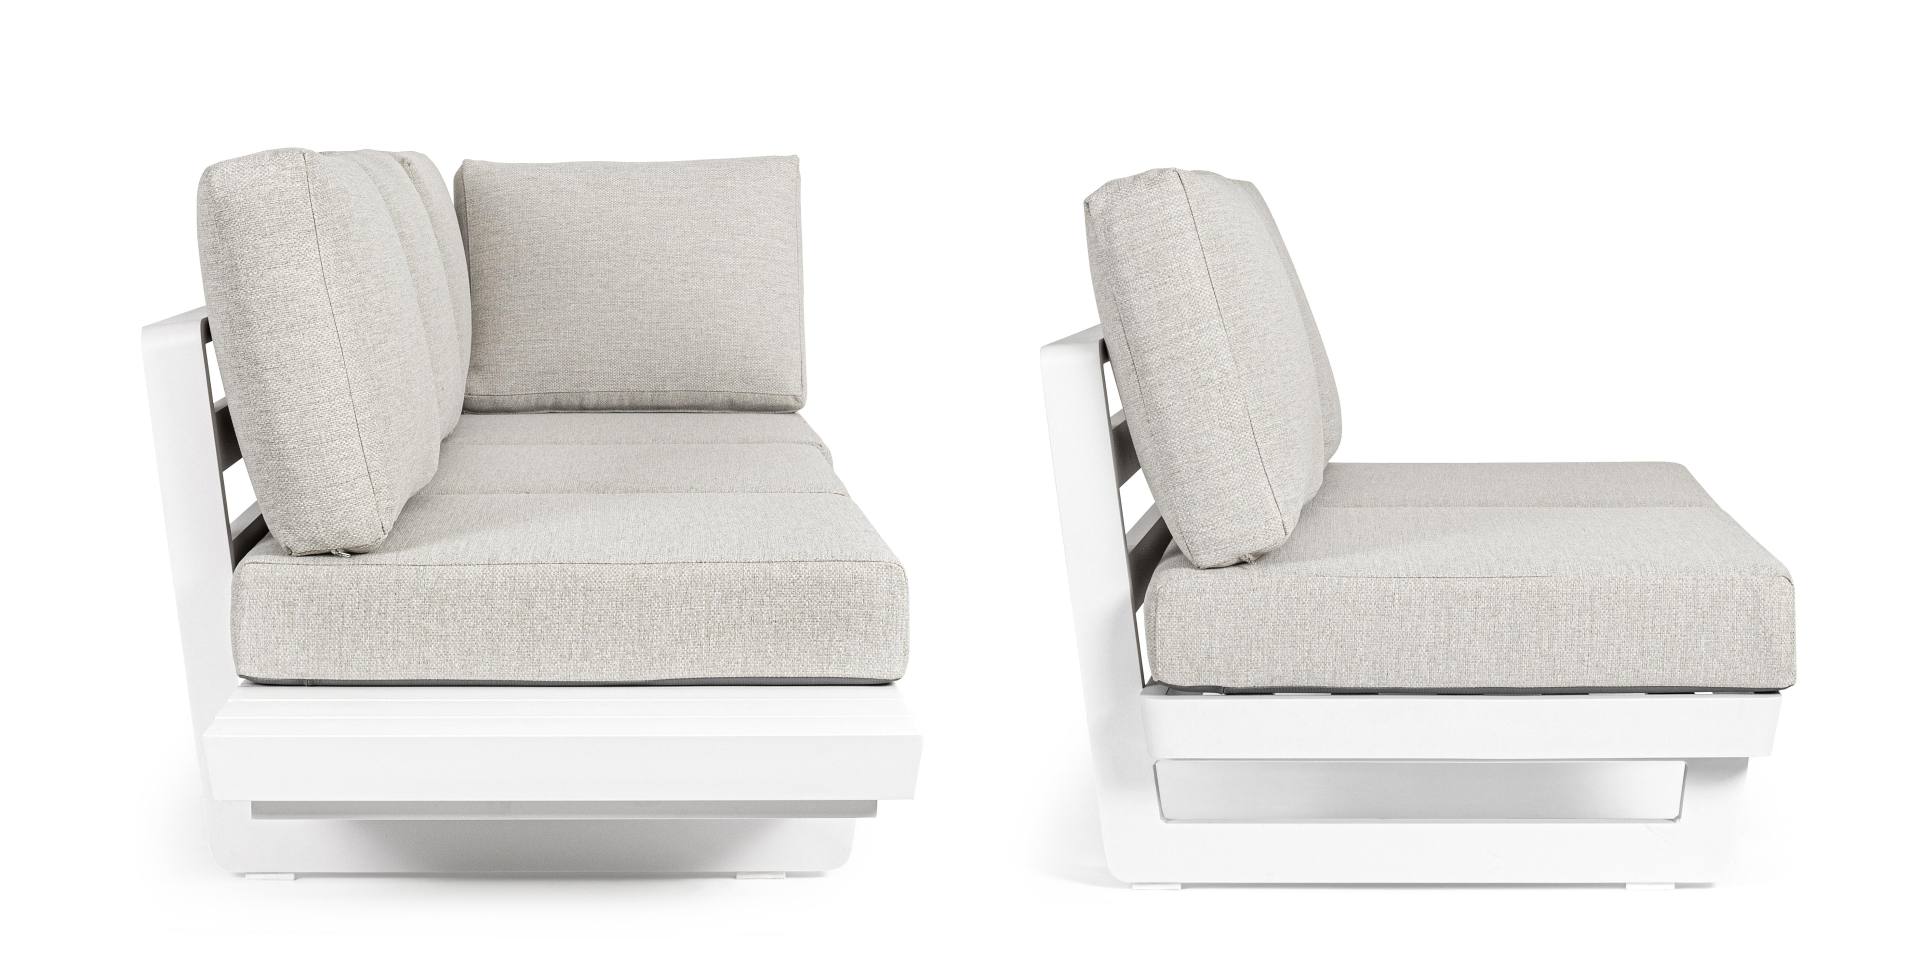 Das Gartensofa Infinity überzeugt mit seinem modernen Design. Gefertigt wurde es aus Olefin-Stoff, welcher einen grauen Farbton besitzt. Das Gestell ist aus Aluminium und hat eine weiße Farbe. Das Sofa verfügt über eine Sitzhöhe von 38 cm und ist für den 